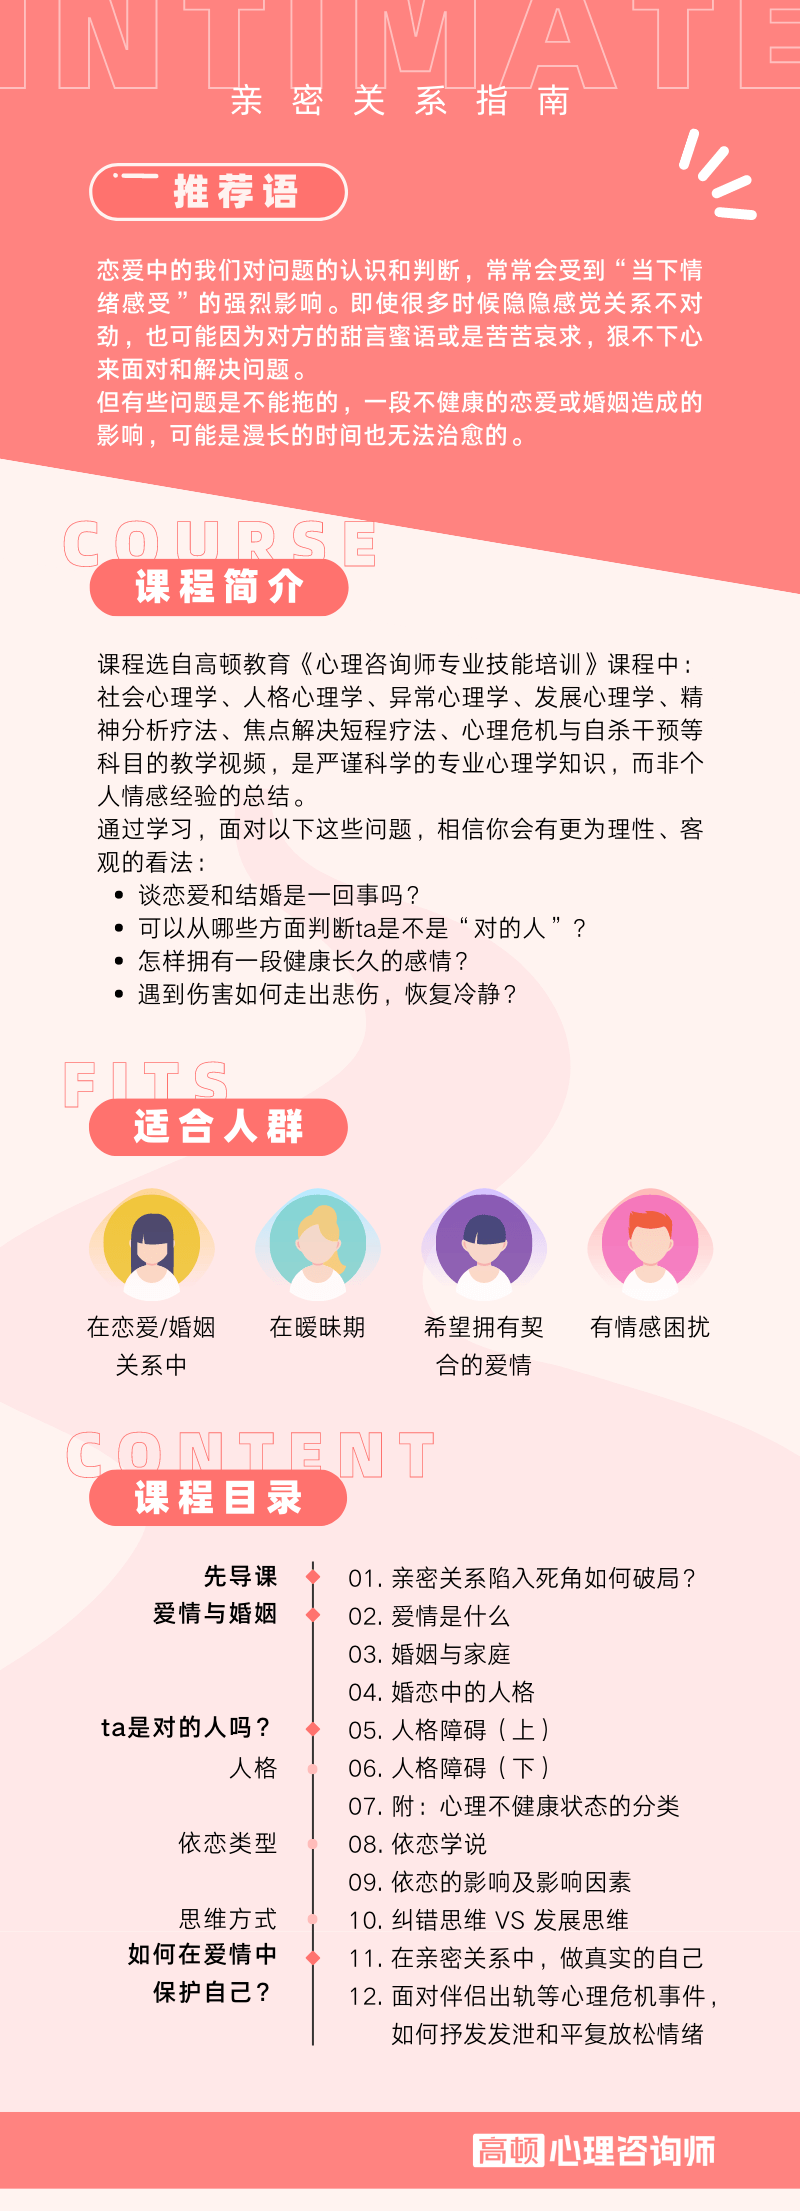 https://simg01.gaodunwangxiao.com/uploadfiles/product-center/202302/10/15171_20230210163656.png